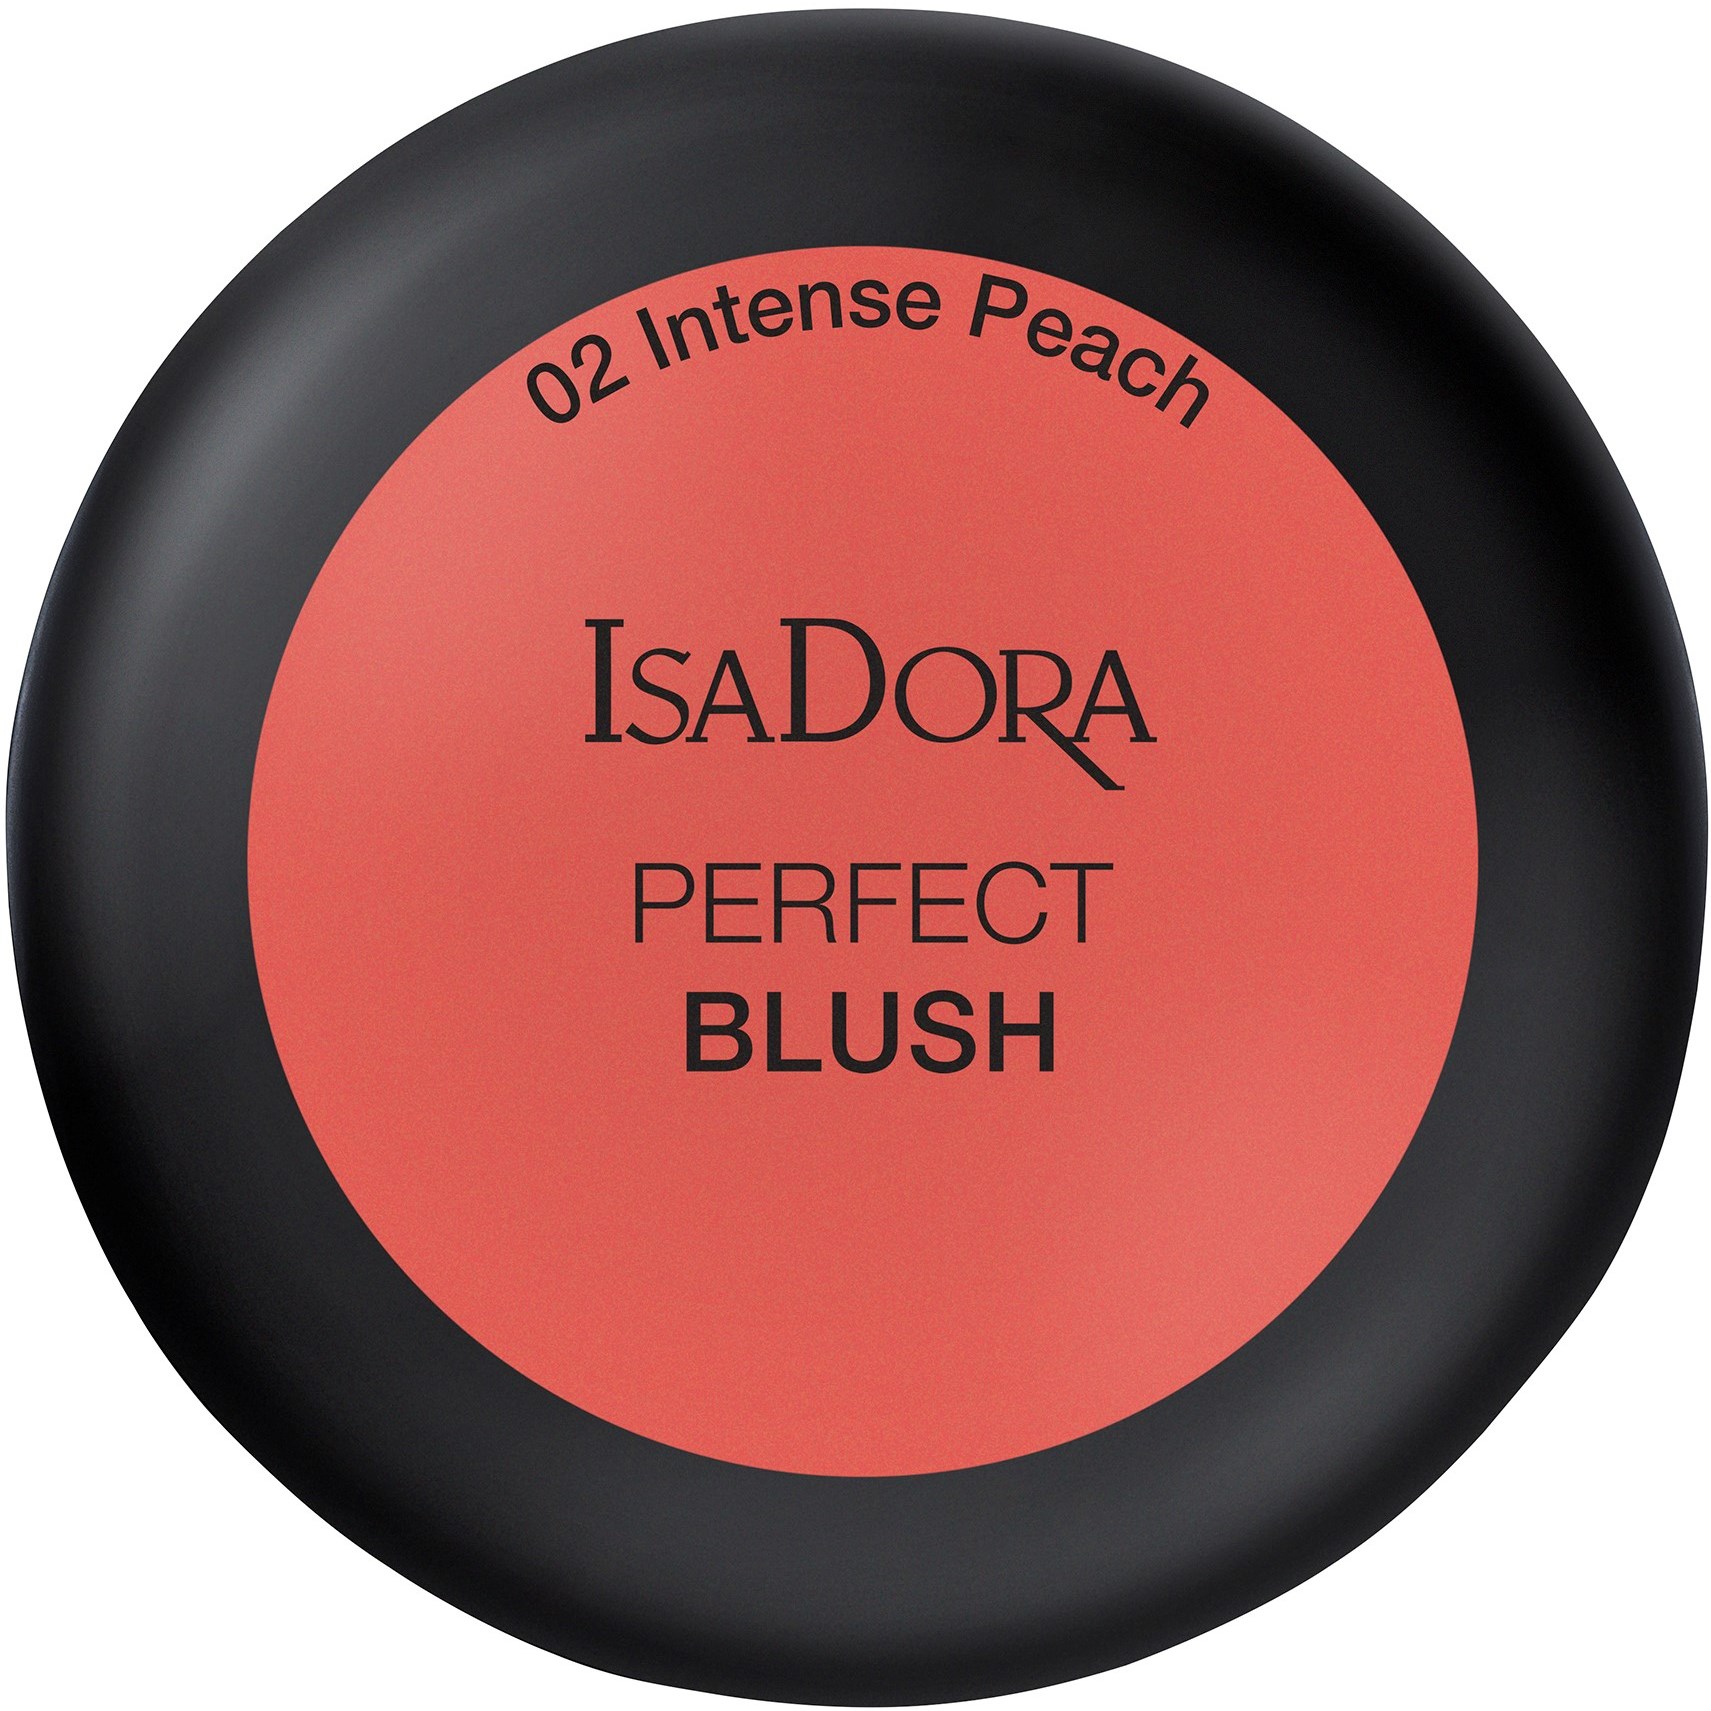 Läs mer om IsaDora Perfect Blush 2 Intense Peach